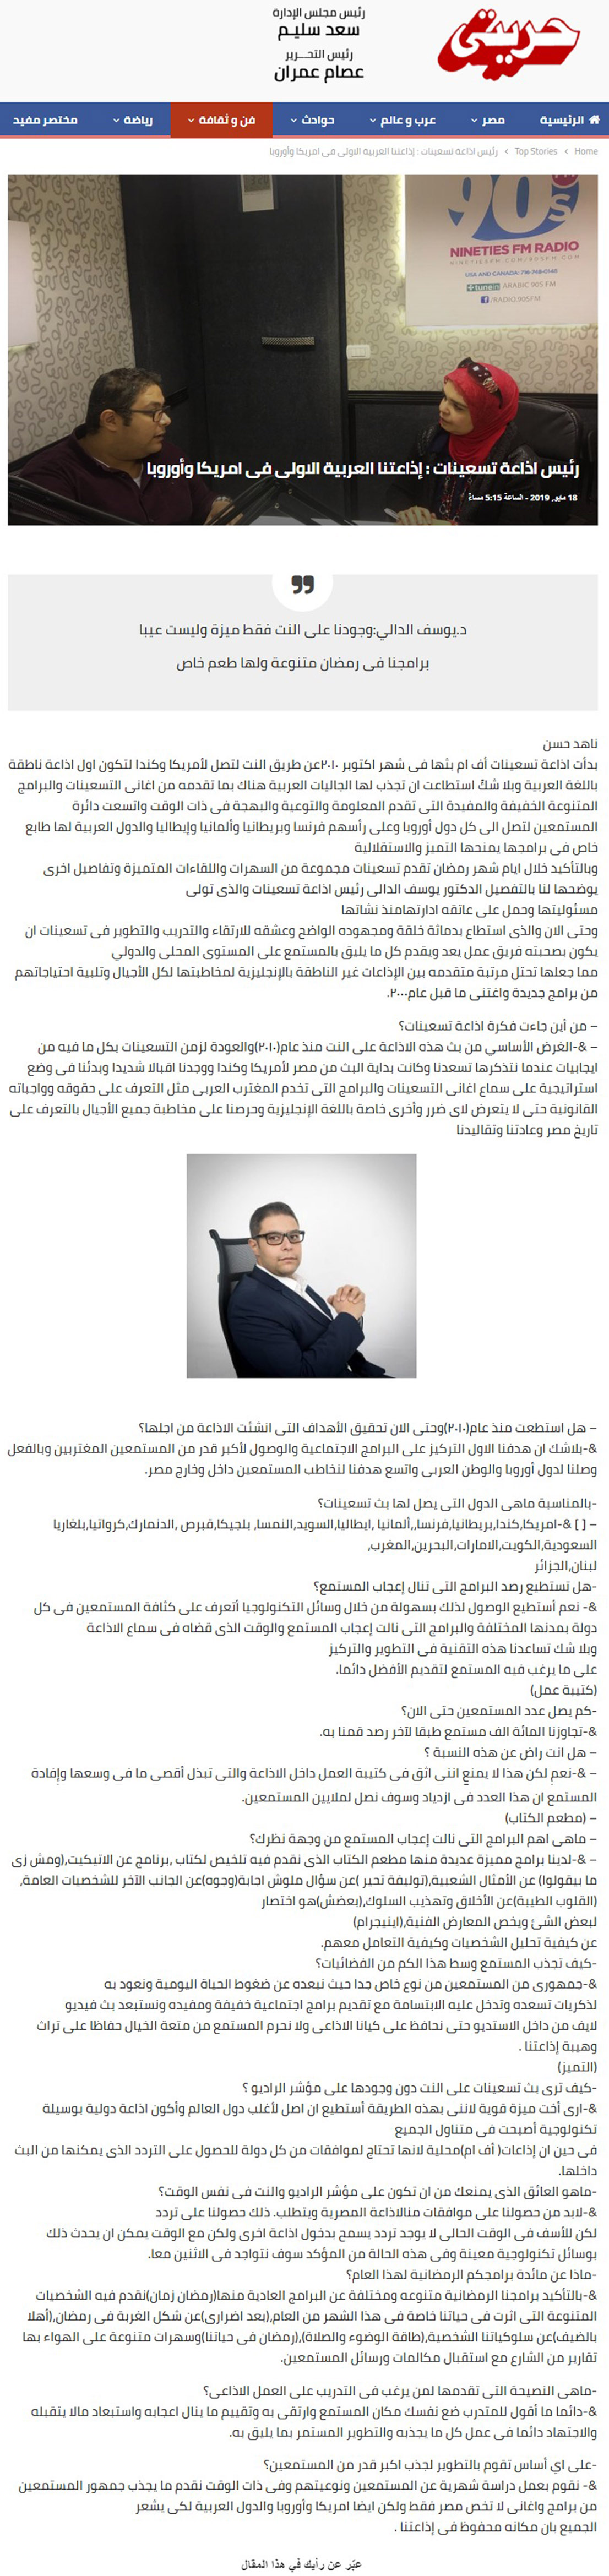 يوسف الدالي في حوار مع مجلة حريتي